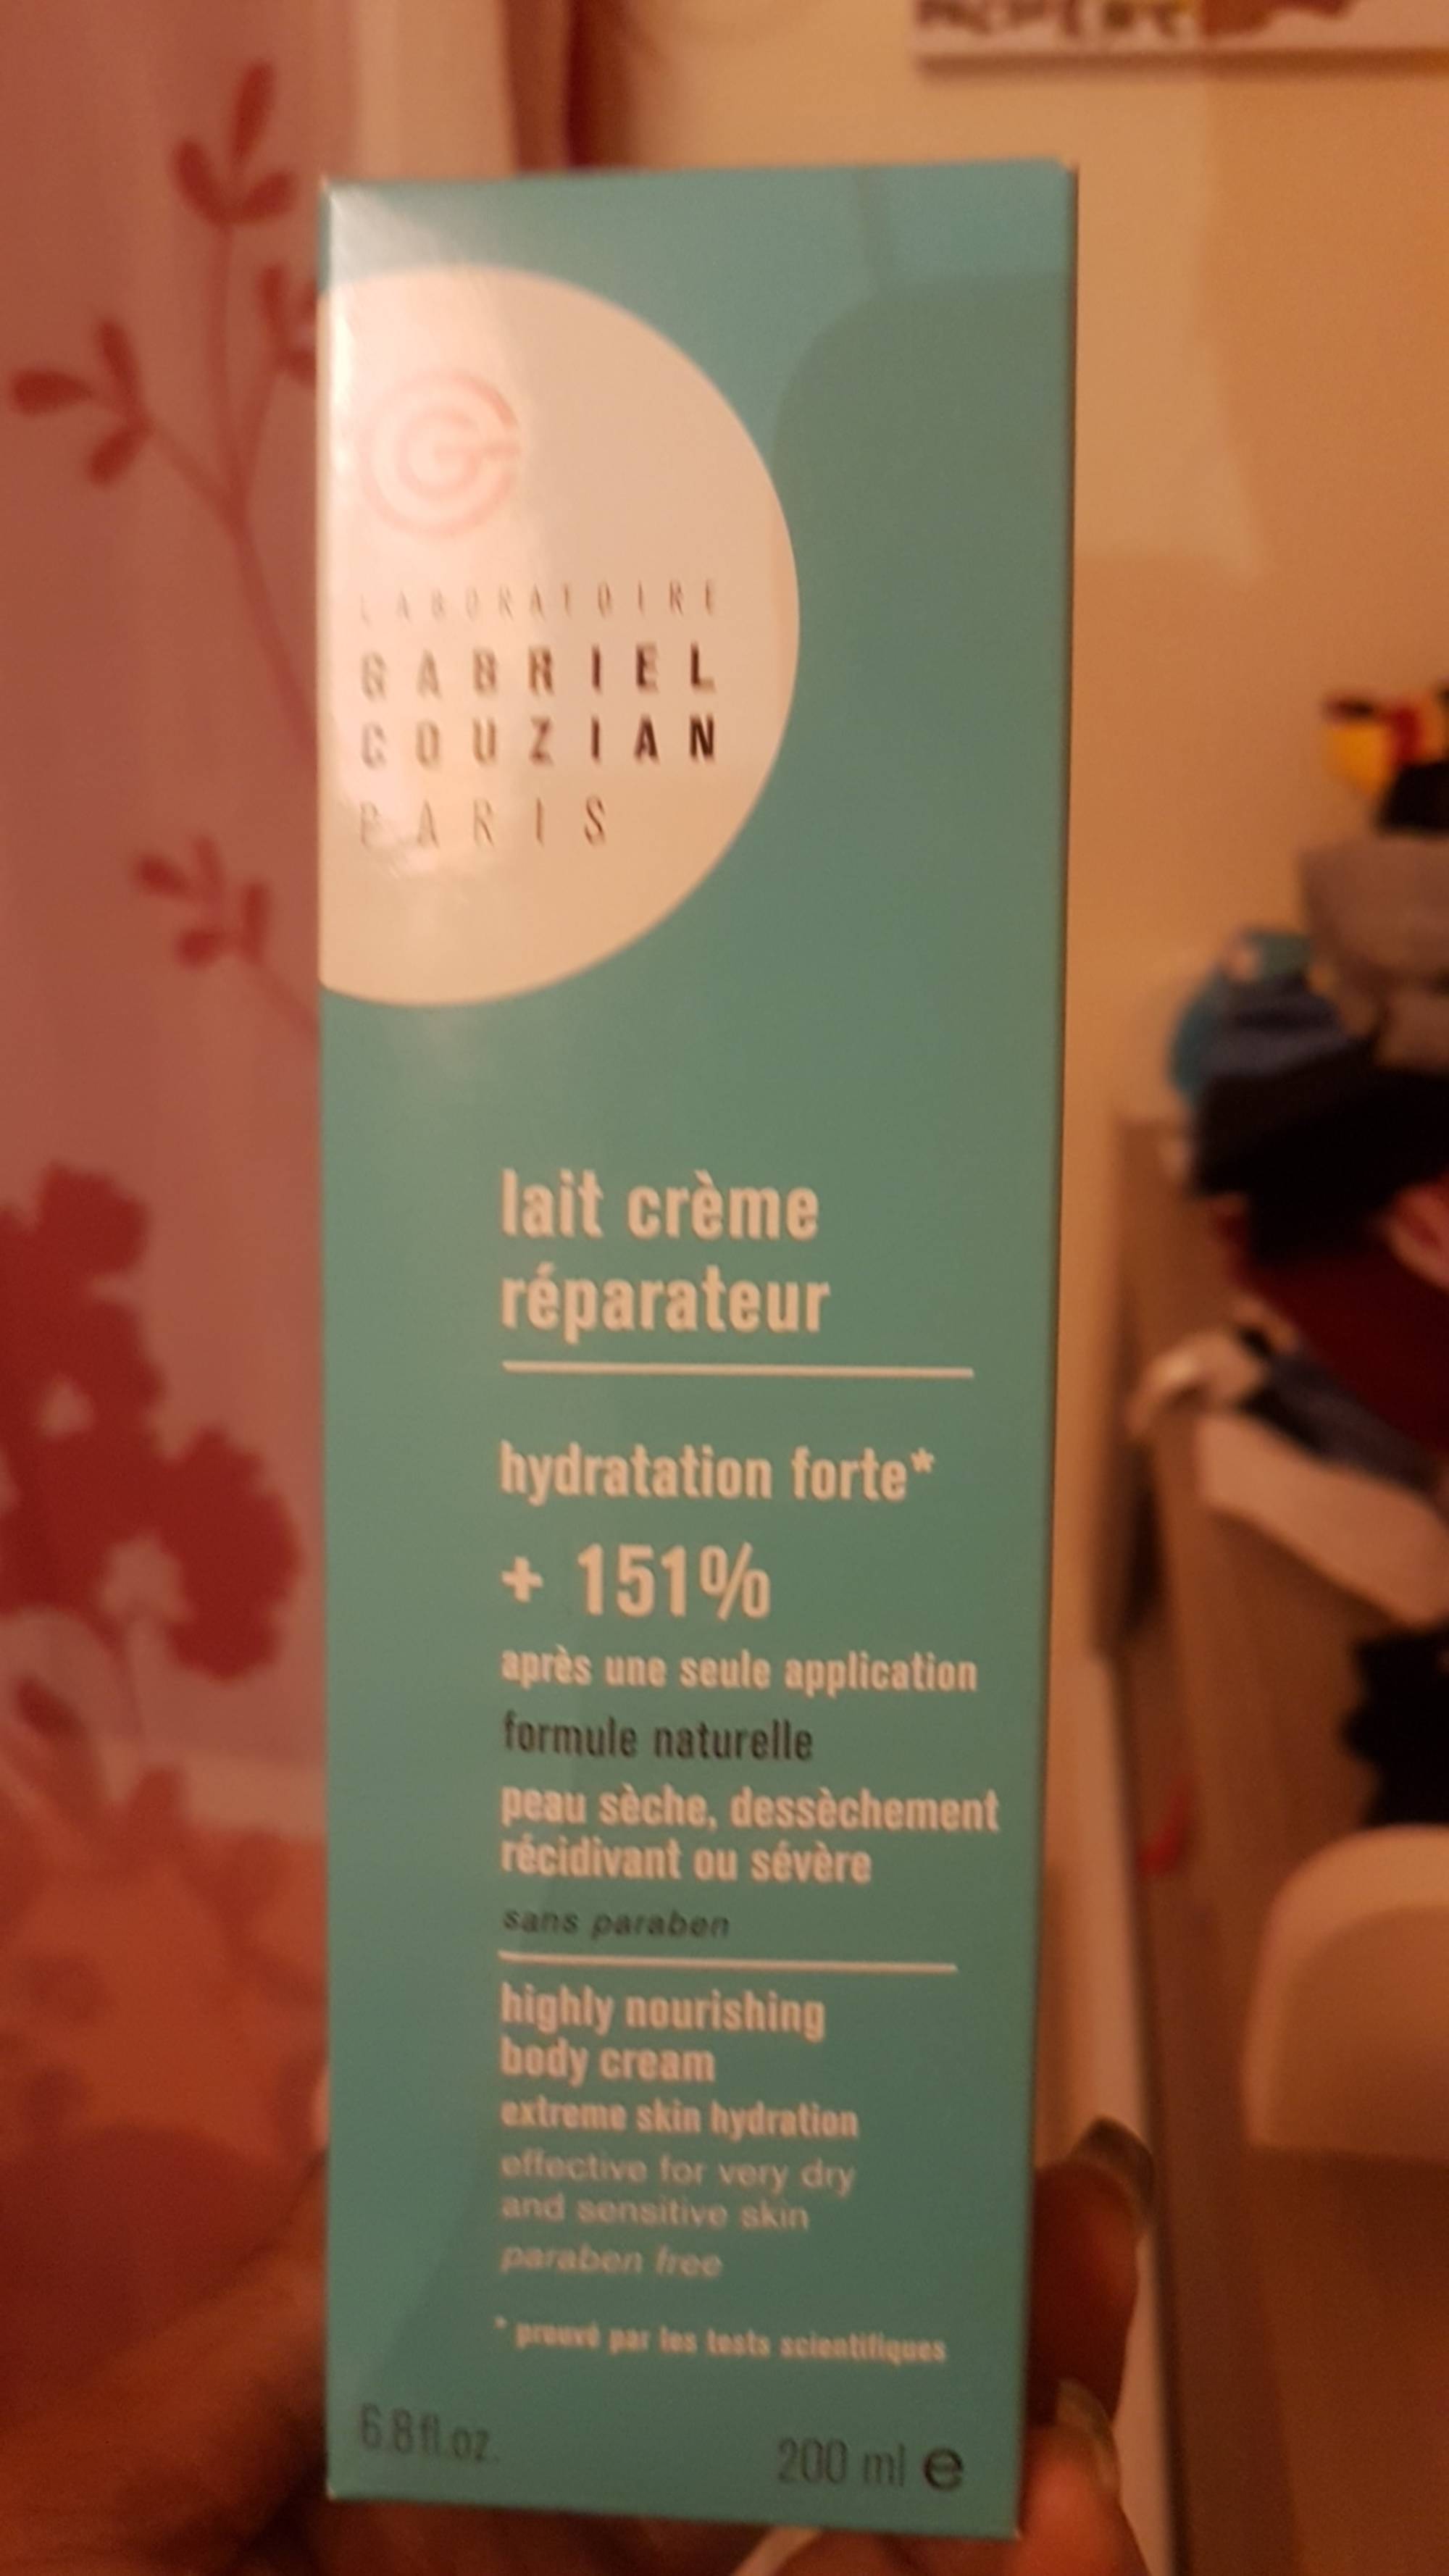 GABRIEL COUZIAN - Lait crème réparateur hydratation forte